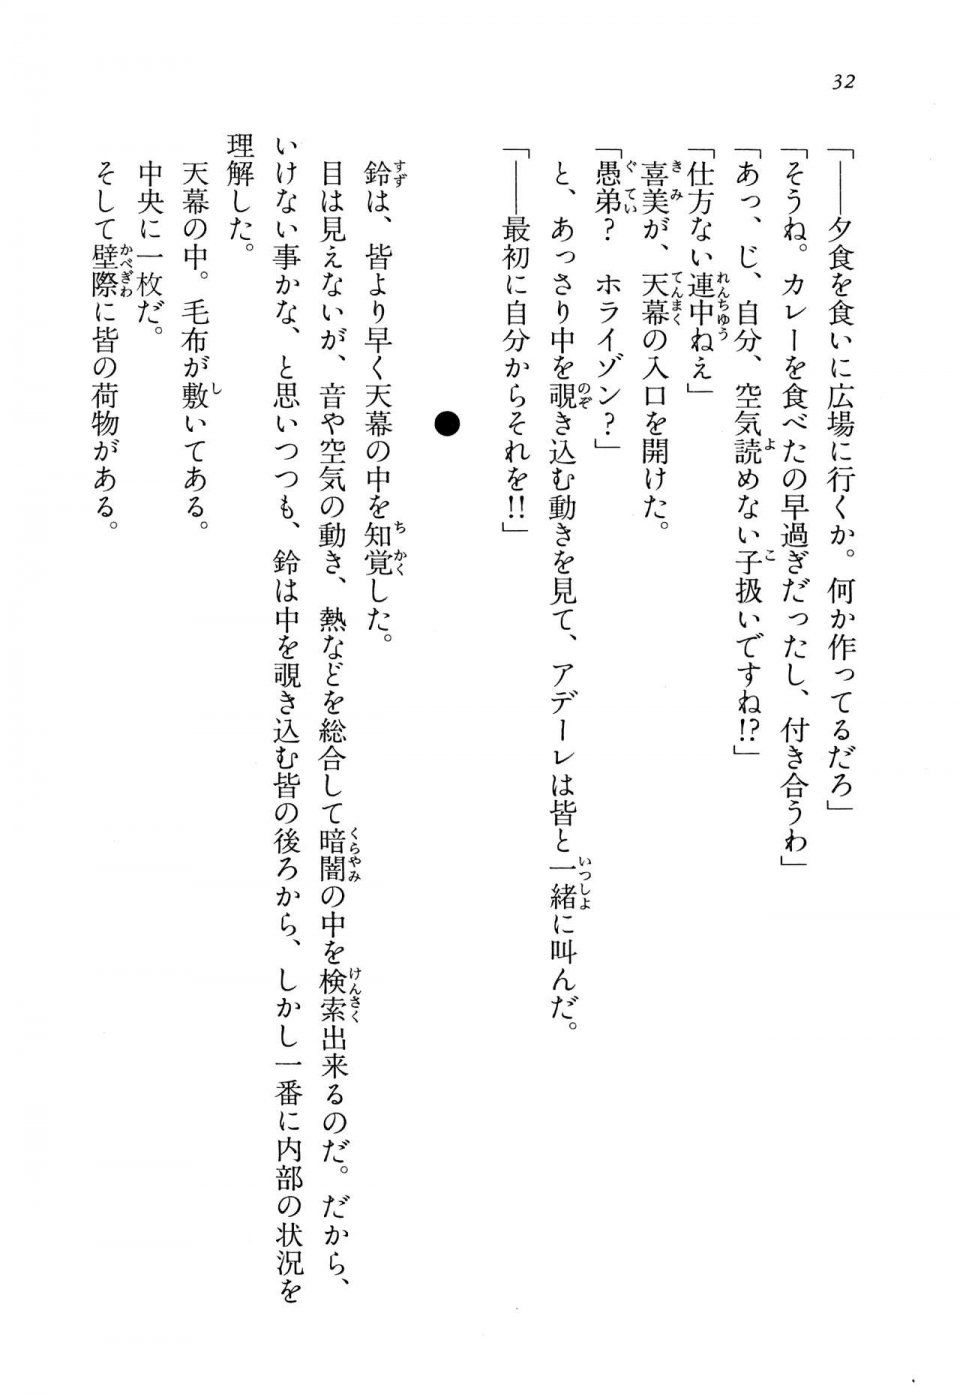 Kyoukai Senjou no Horizon LN Vol 13(6A) - Photo #32